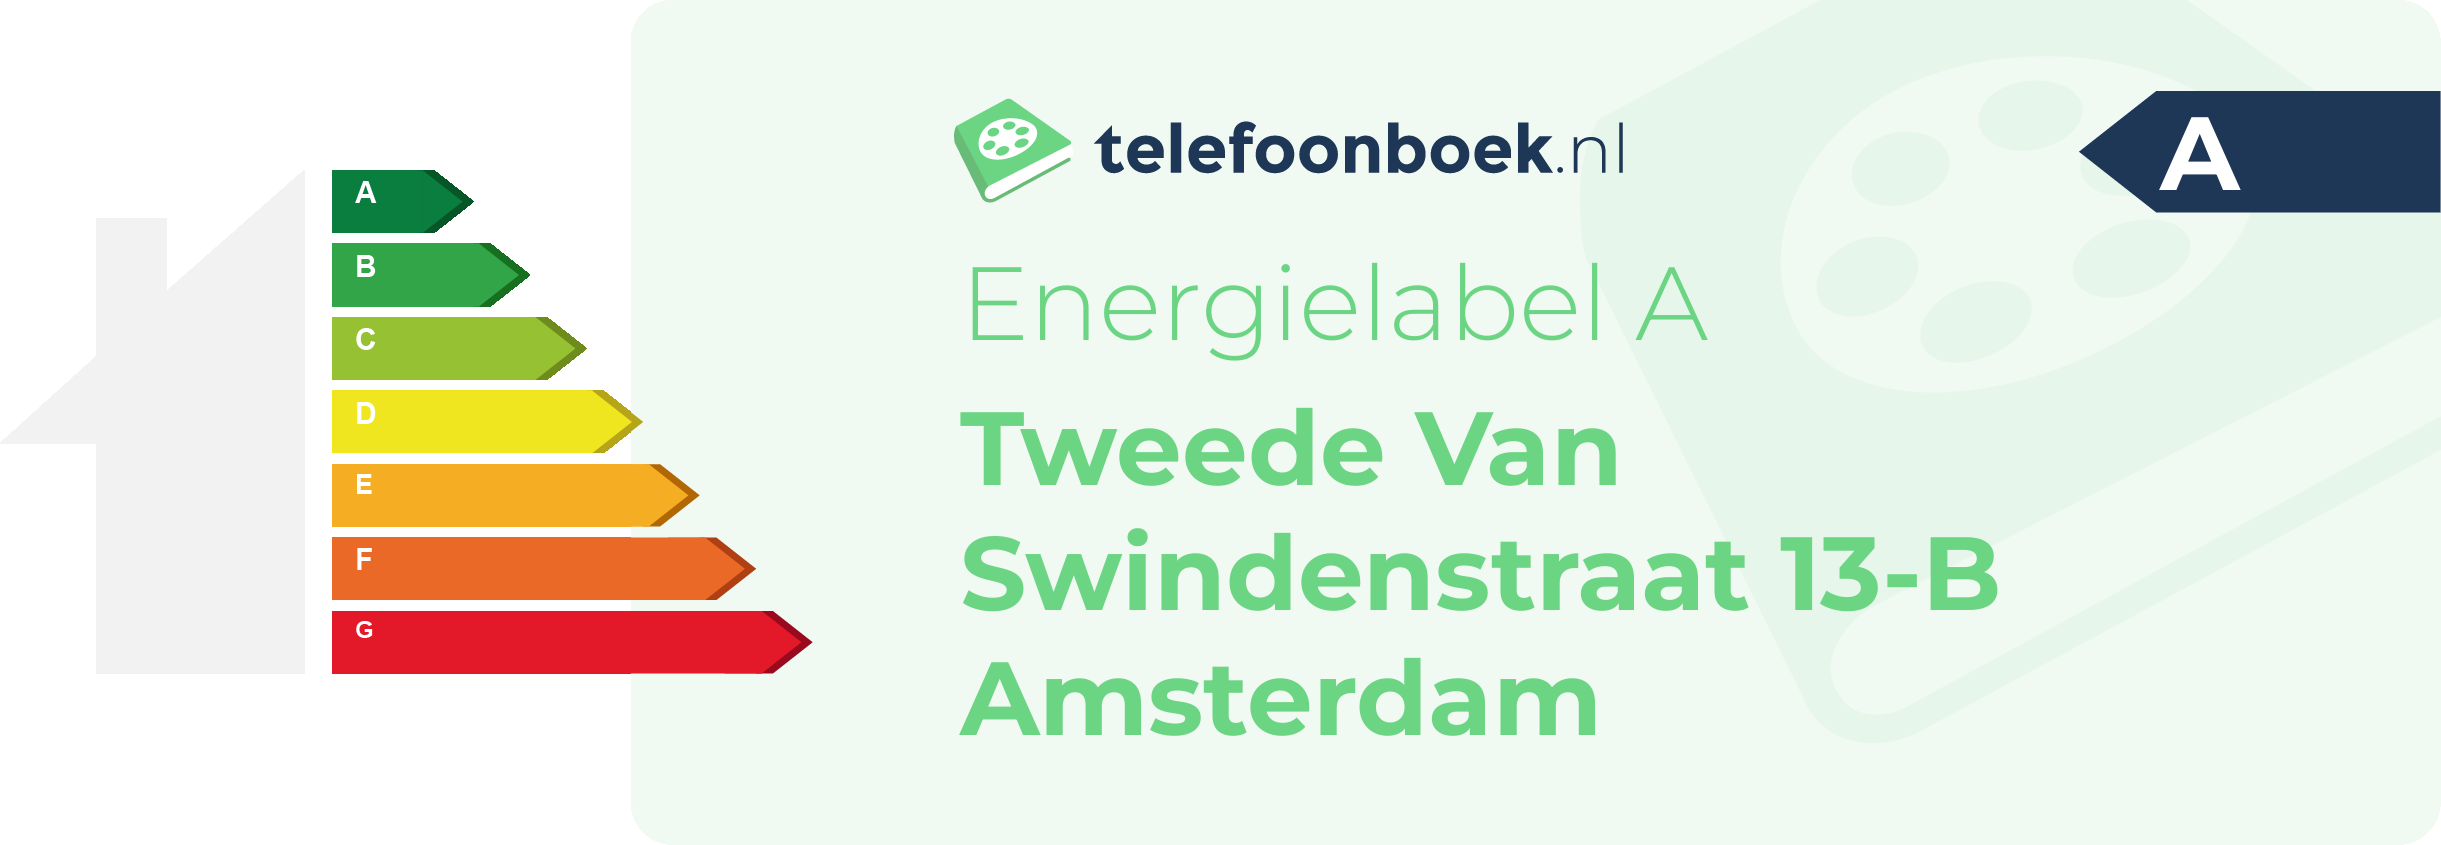 Energielabel Tweede Van Swindenstraat 13-B Amsterdam